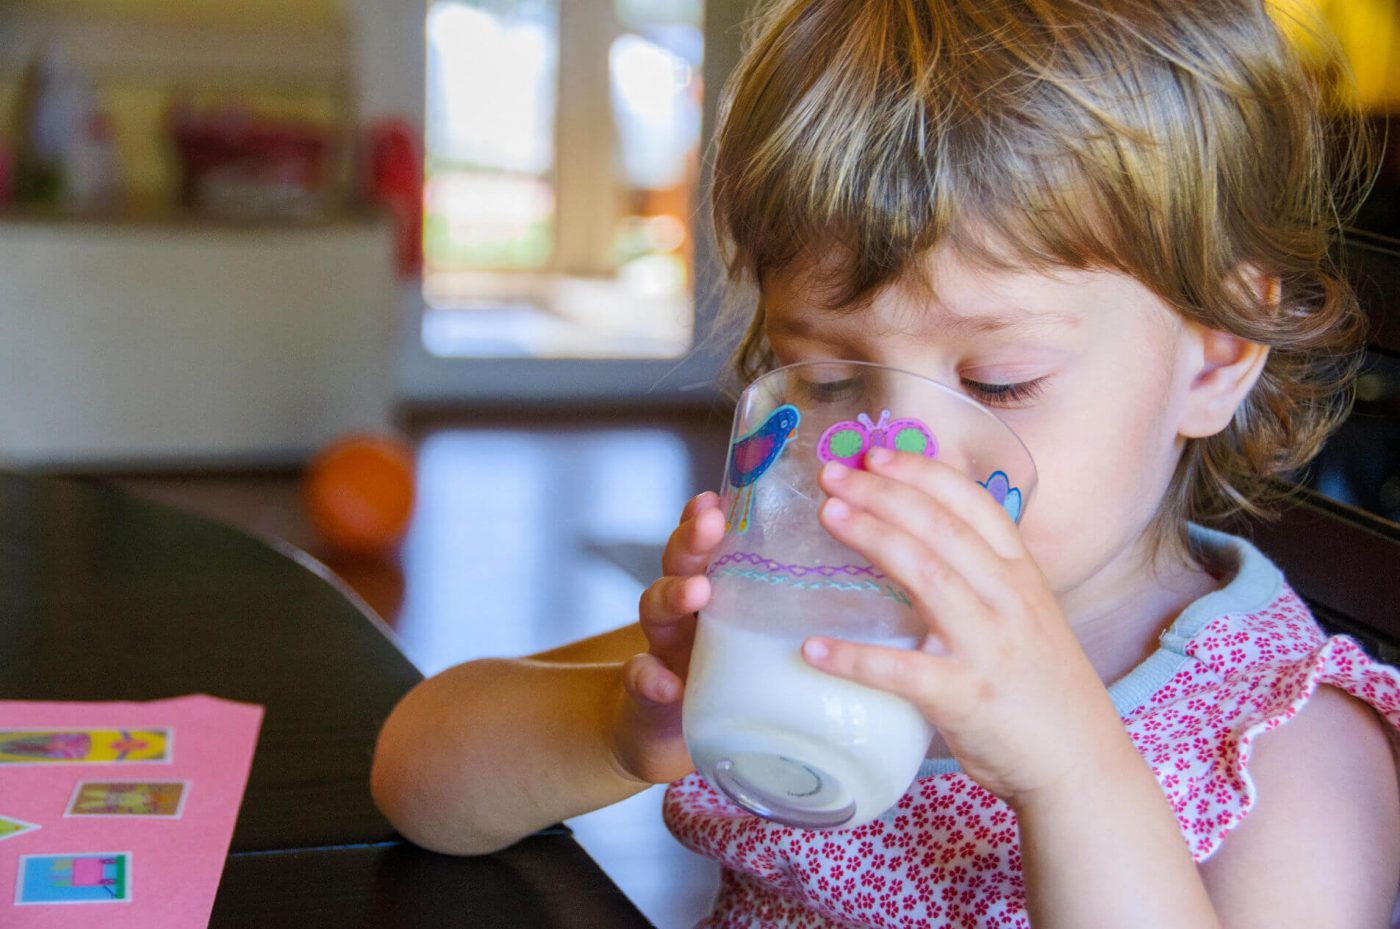 È vero che il latte fa venire i tumori? Ecco cosa ha dichiarato la fondazione Veronesi